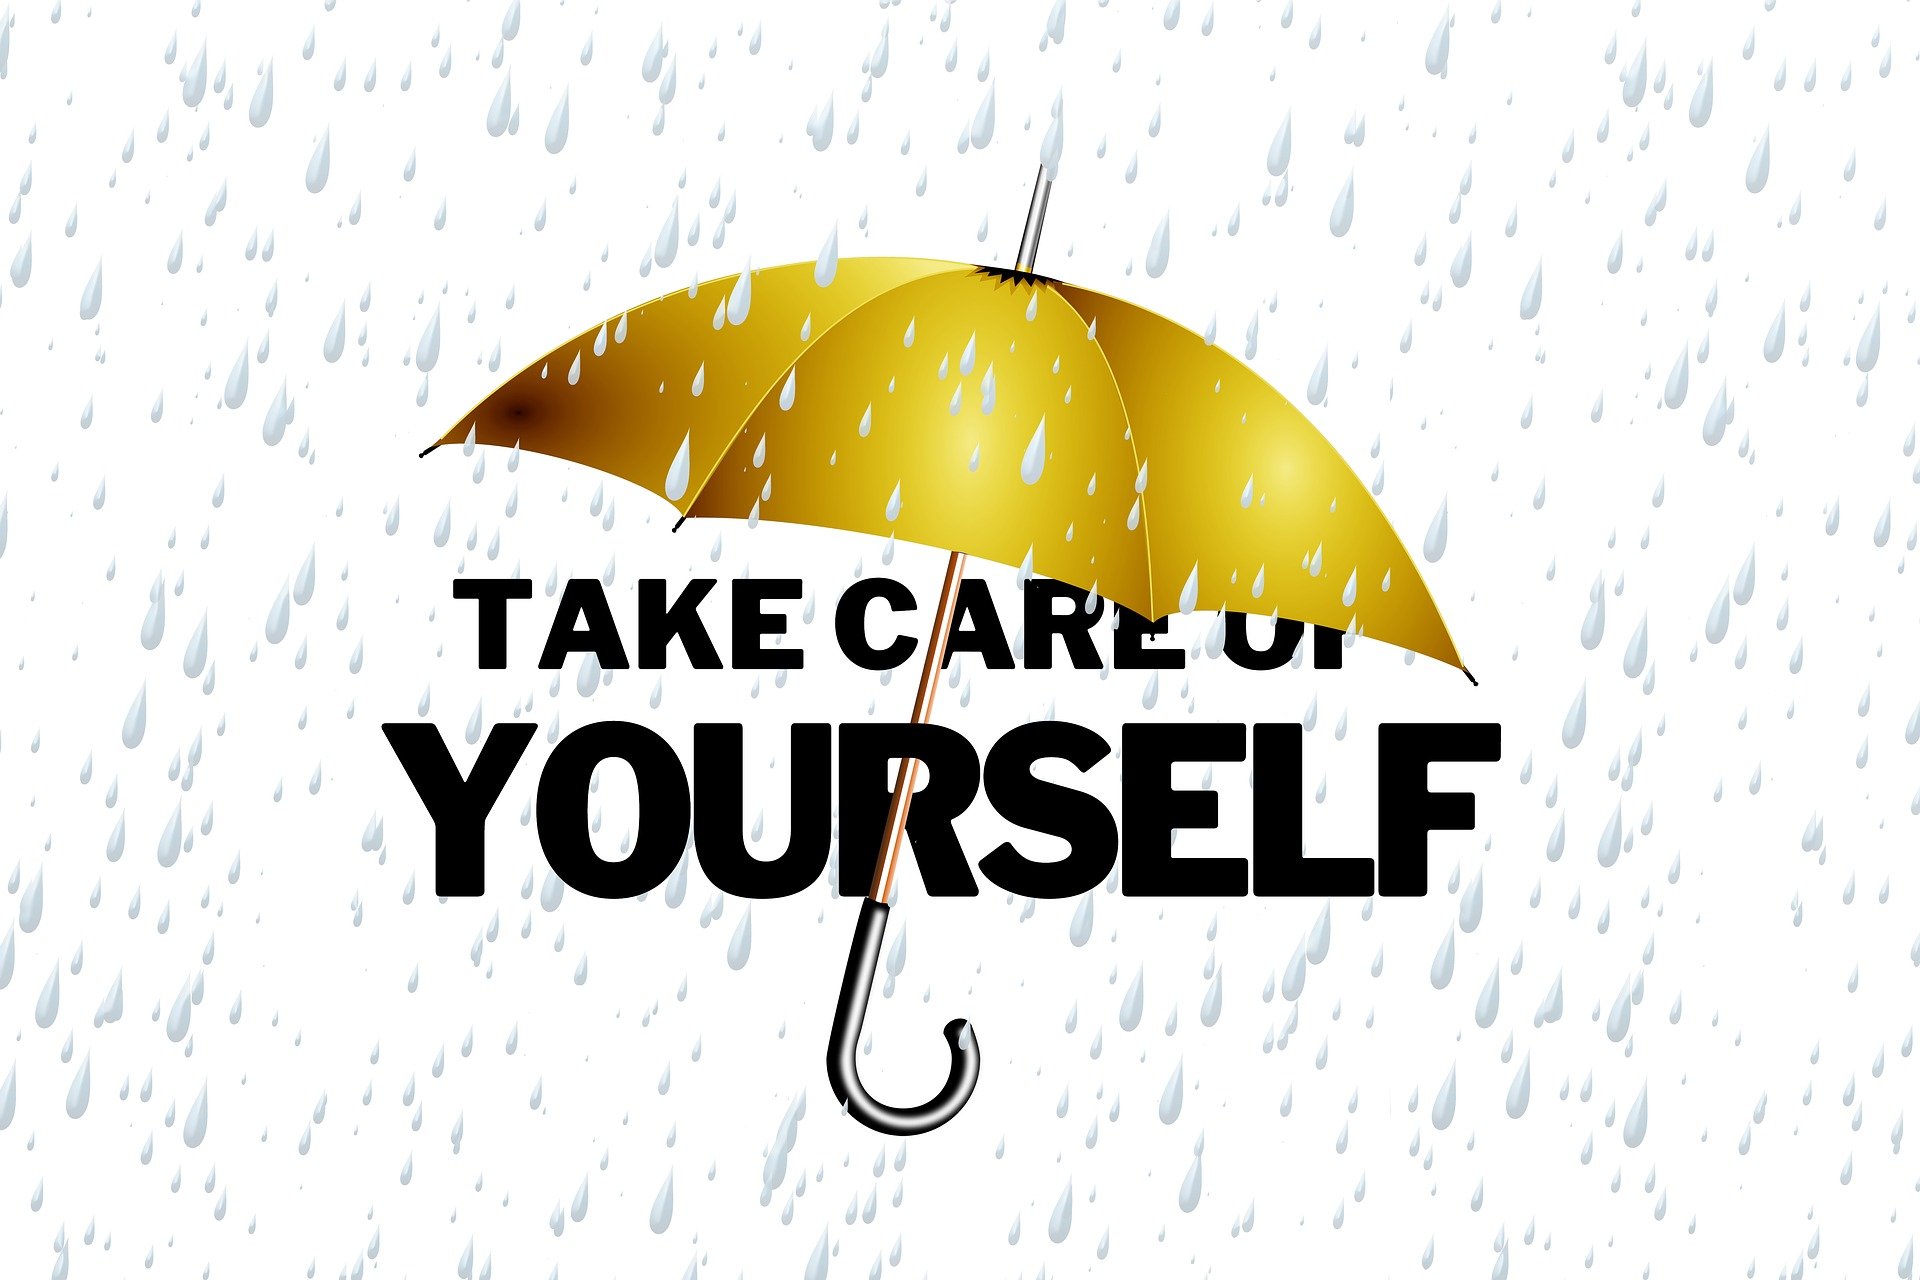 Ein Regenschirm, unter dem die Worte "Take Care of Yourself" stehen.